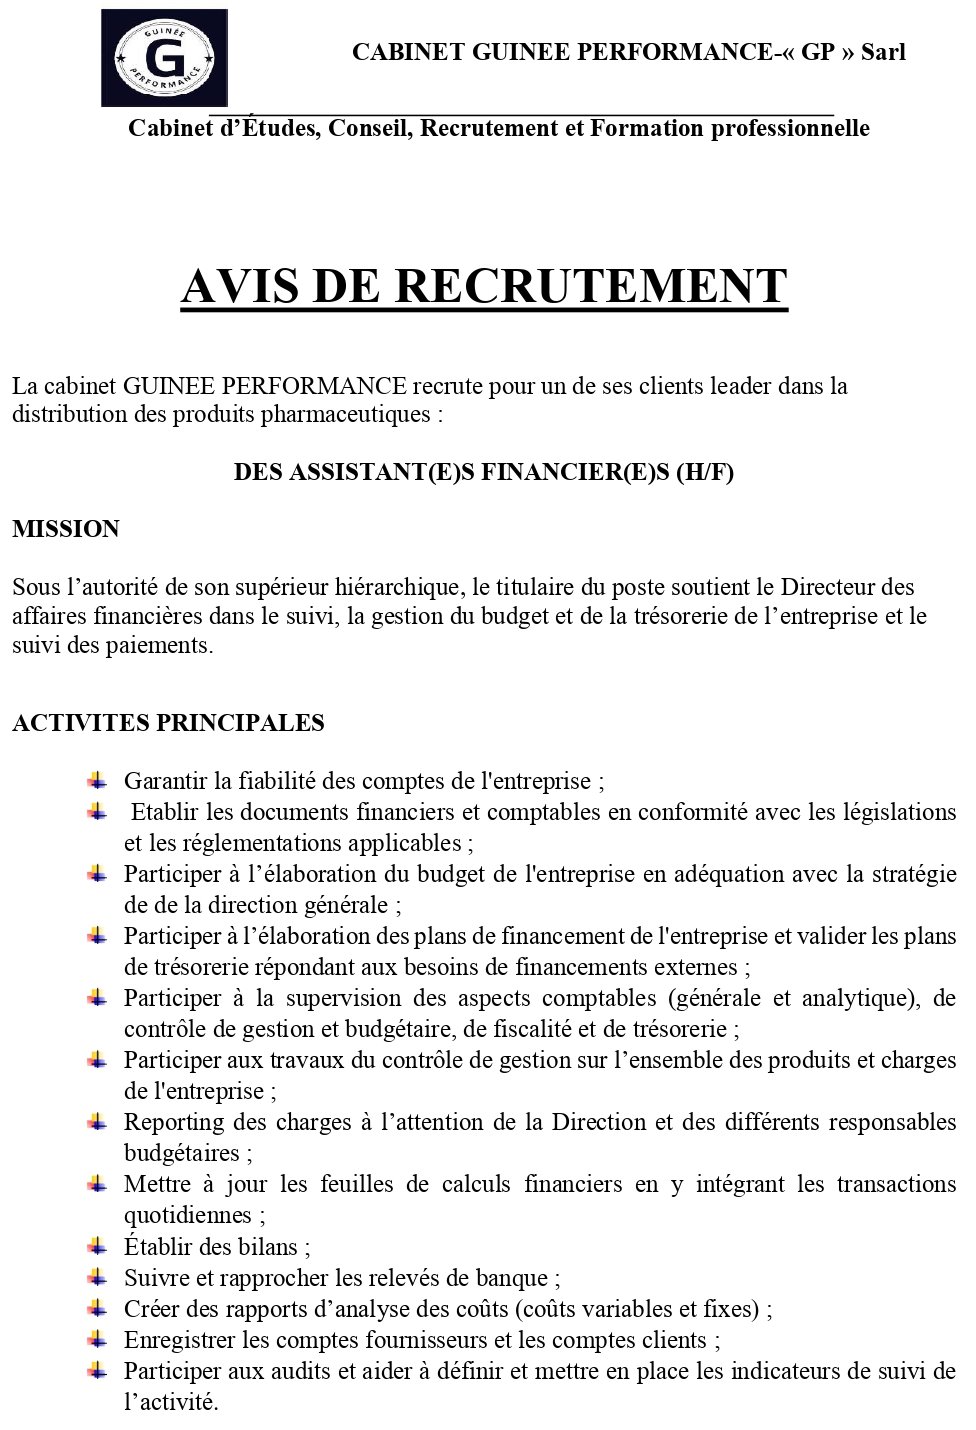 AVIS DE RECRUTEMENT D'UN(E) DES ASSISTANT(E)S FINANCIER(E)S (H/F) | Page 1